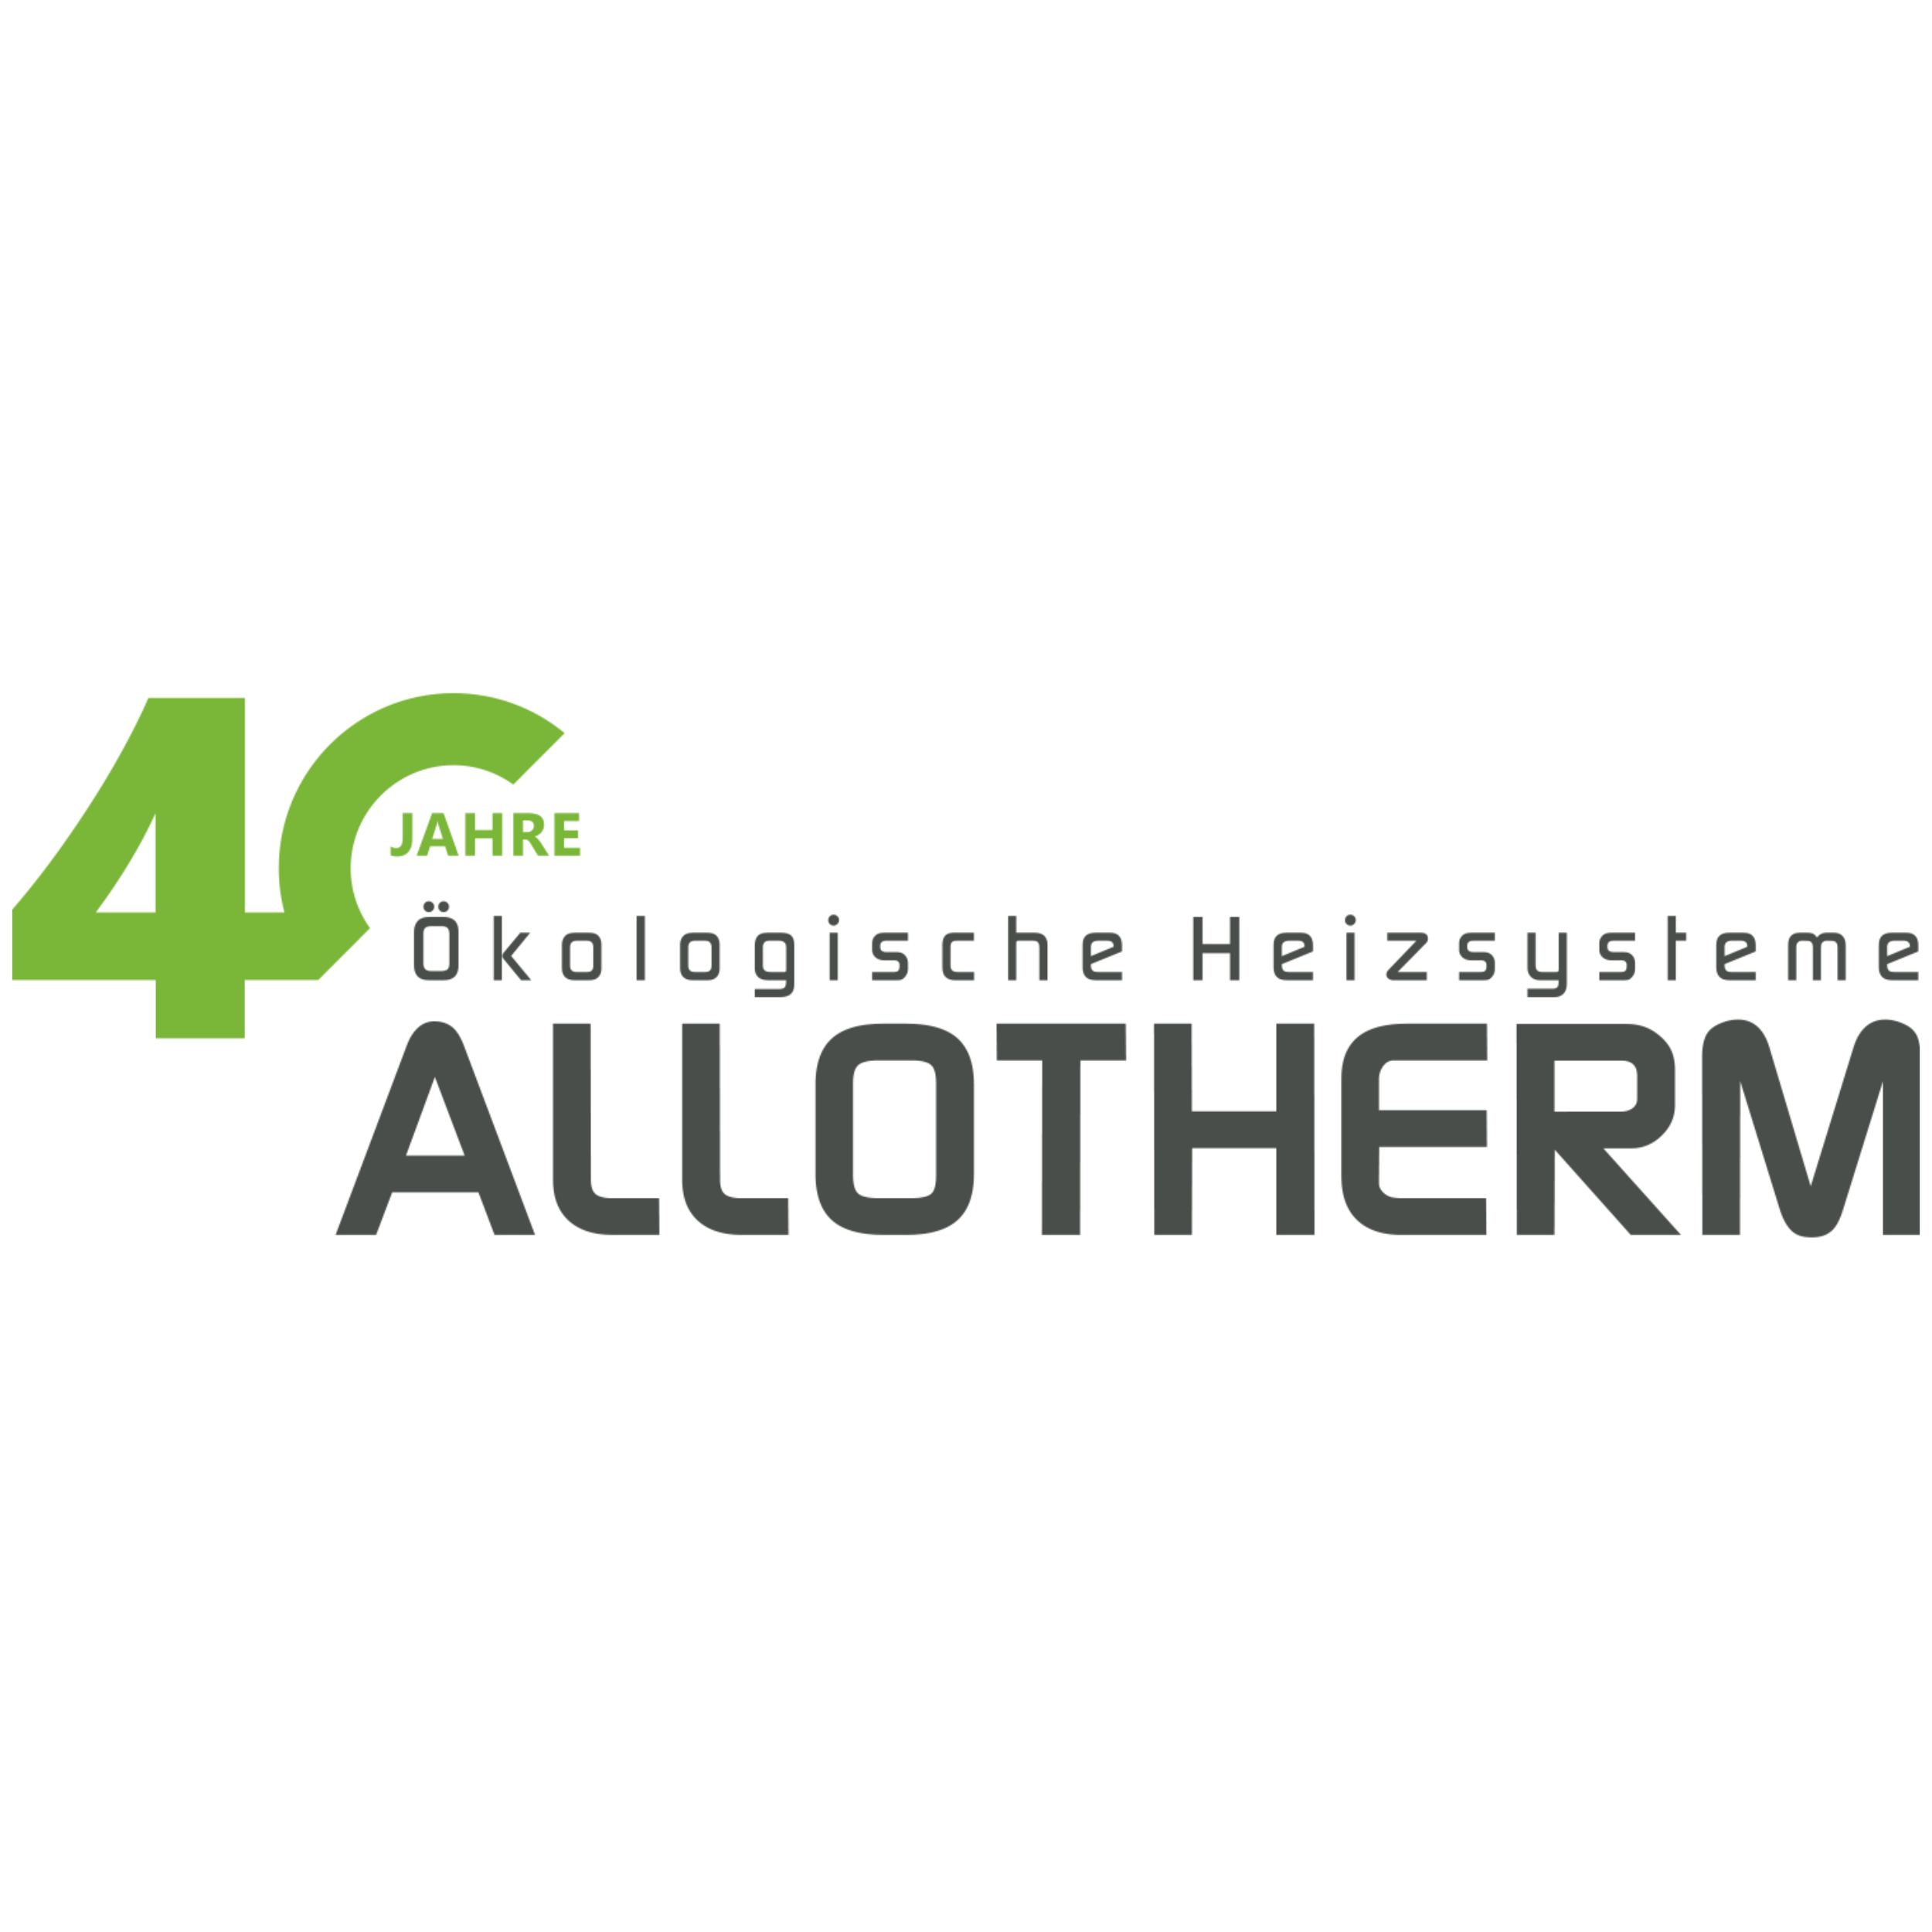 Allotherm AG - Ökologische Heizsysteme